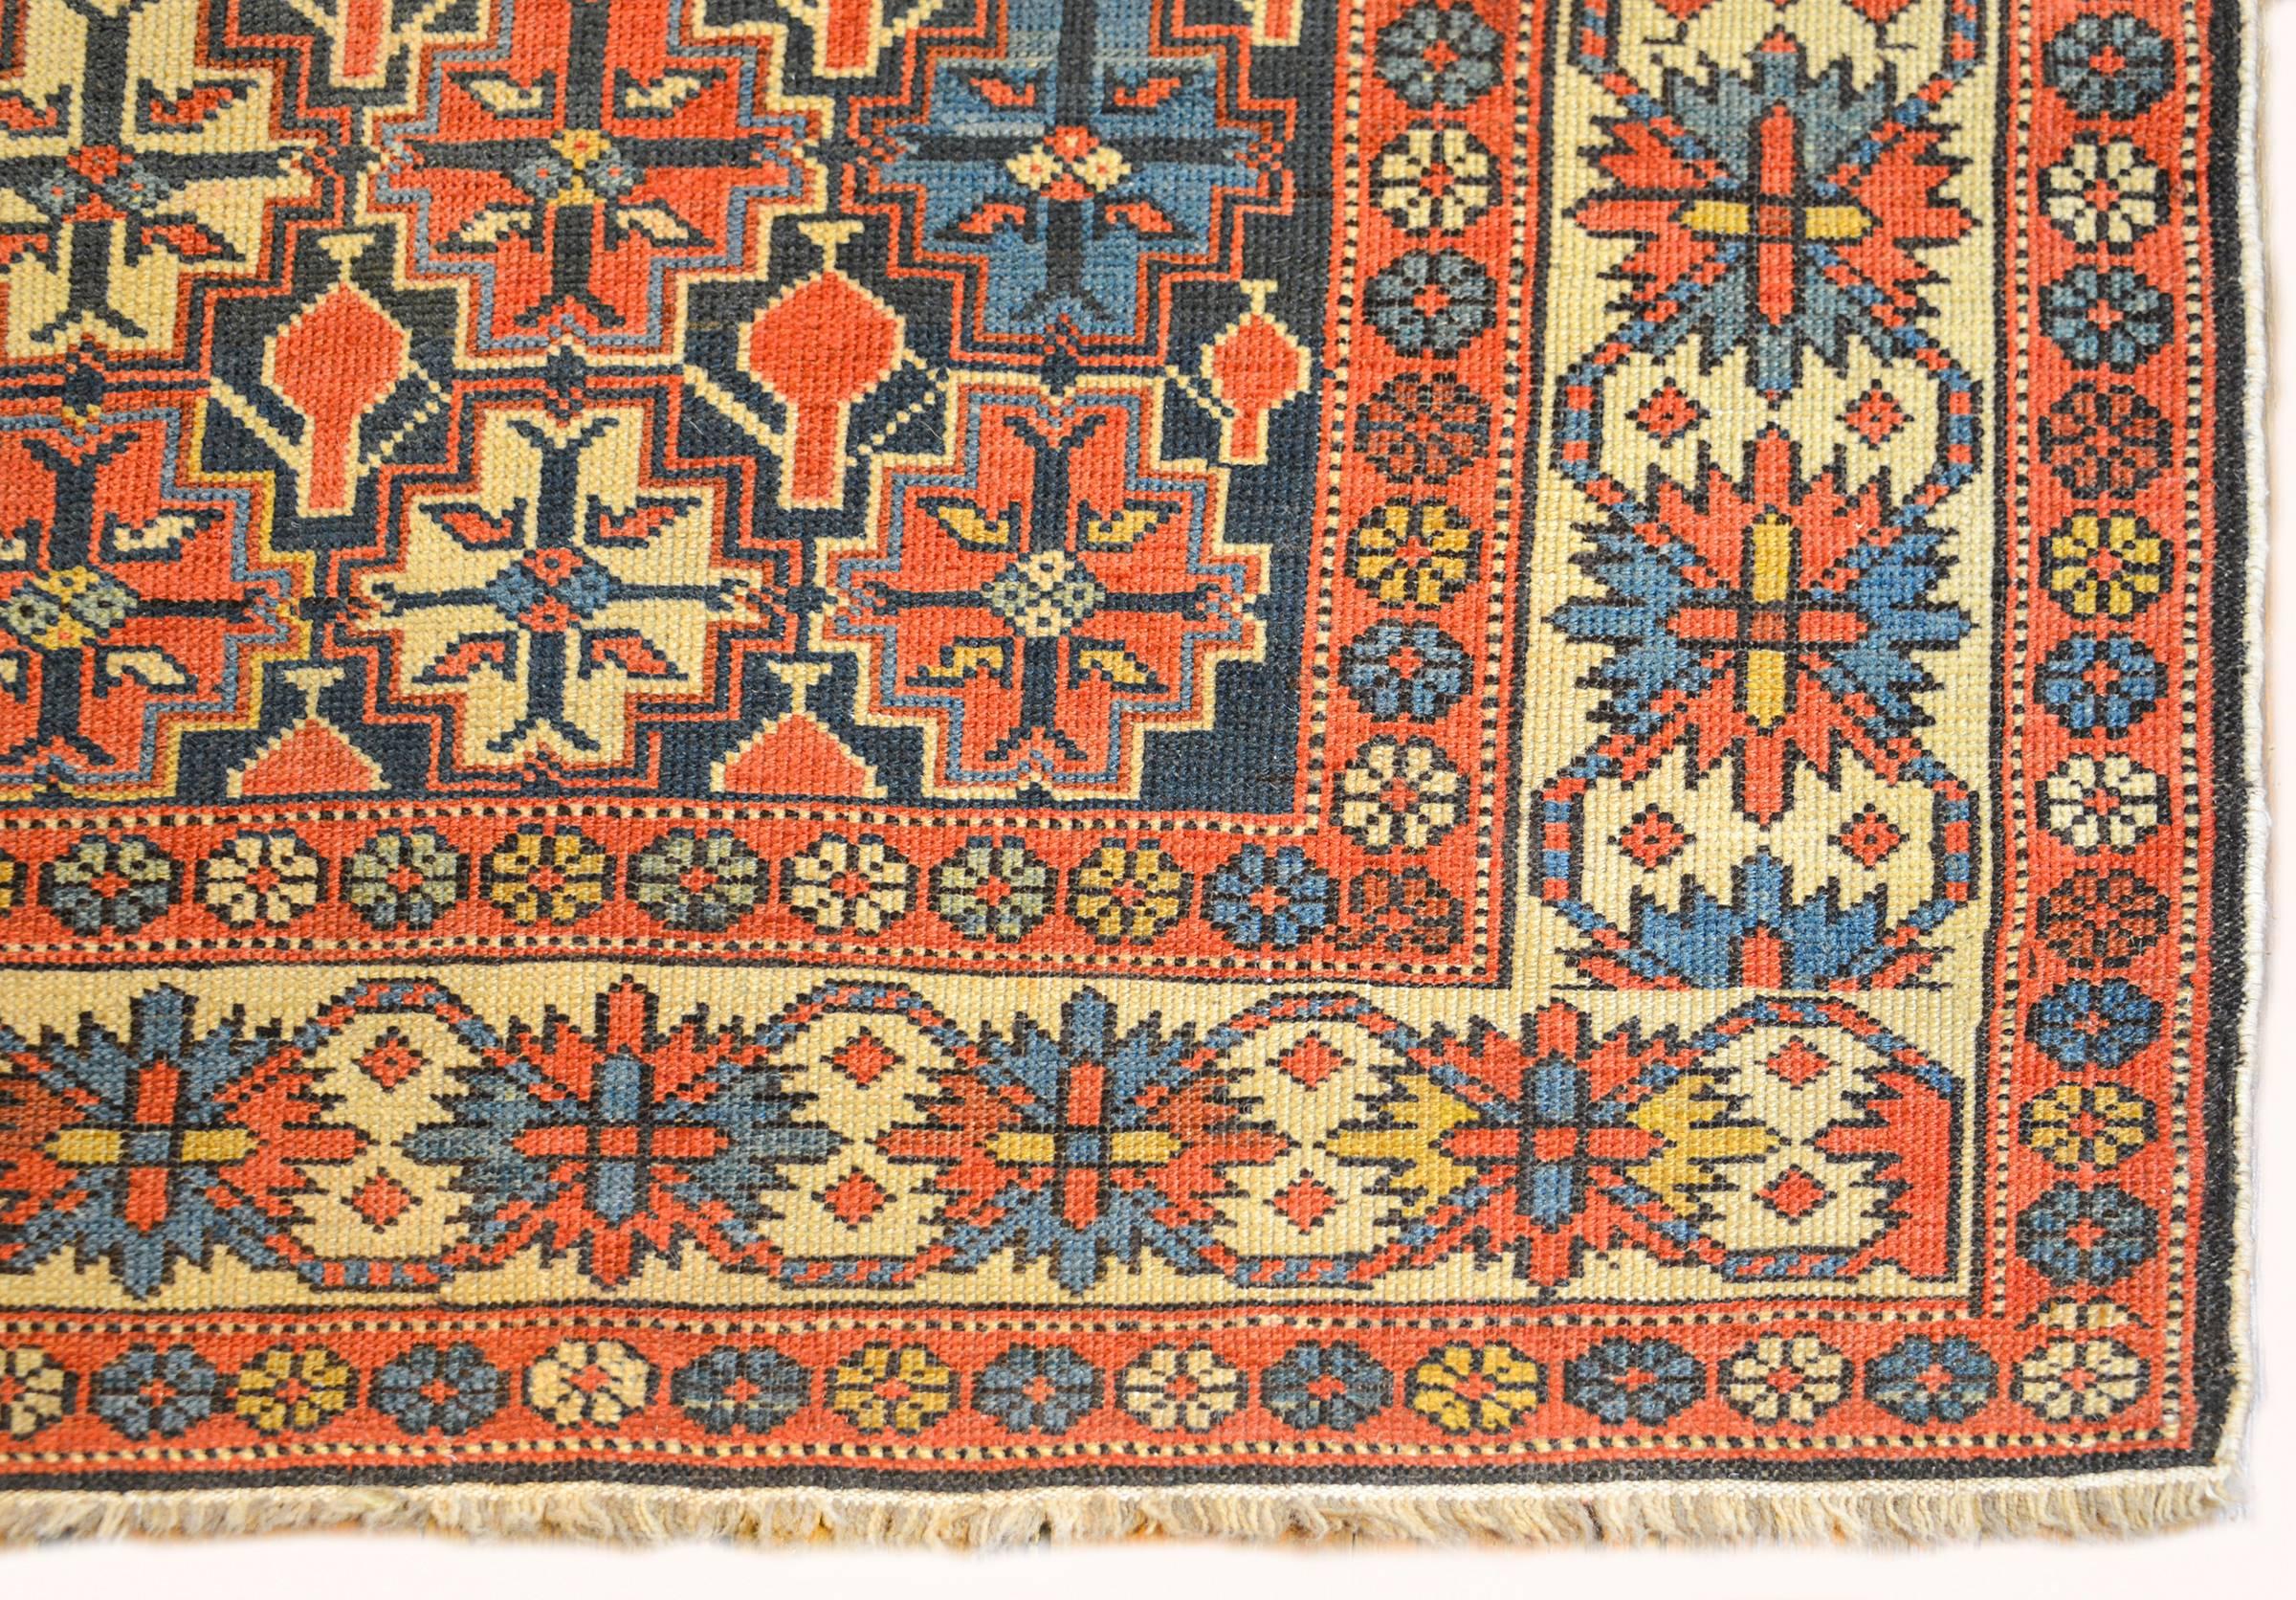 Eine erstaunliche späten 19. Jahrhundert persischen Shrivan Teppich mit einer unglaublichen all-over geometrischen stilisierten Blumenmuster gewebt in karminrot, indigo und natürliche Wolle, auf einem dunklen indigo Feld. Die Bordüre wird durch ein